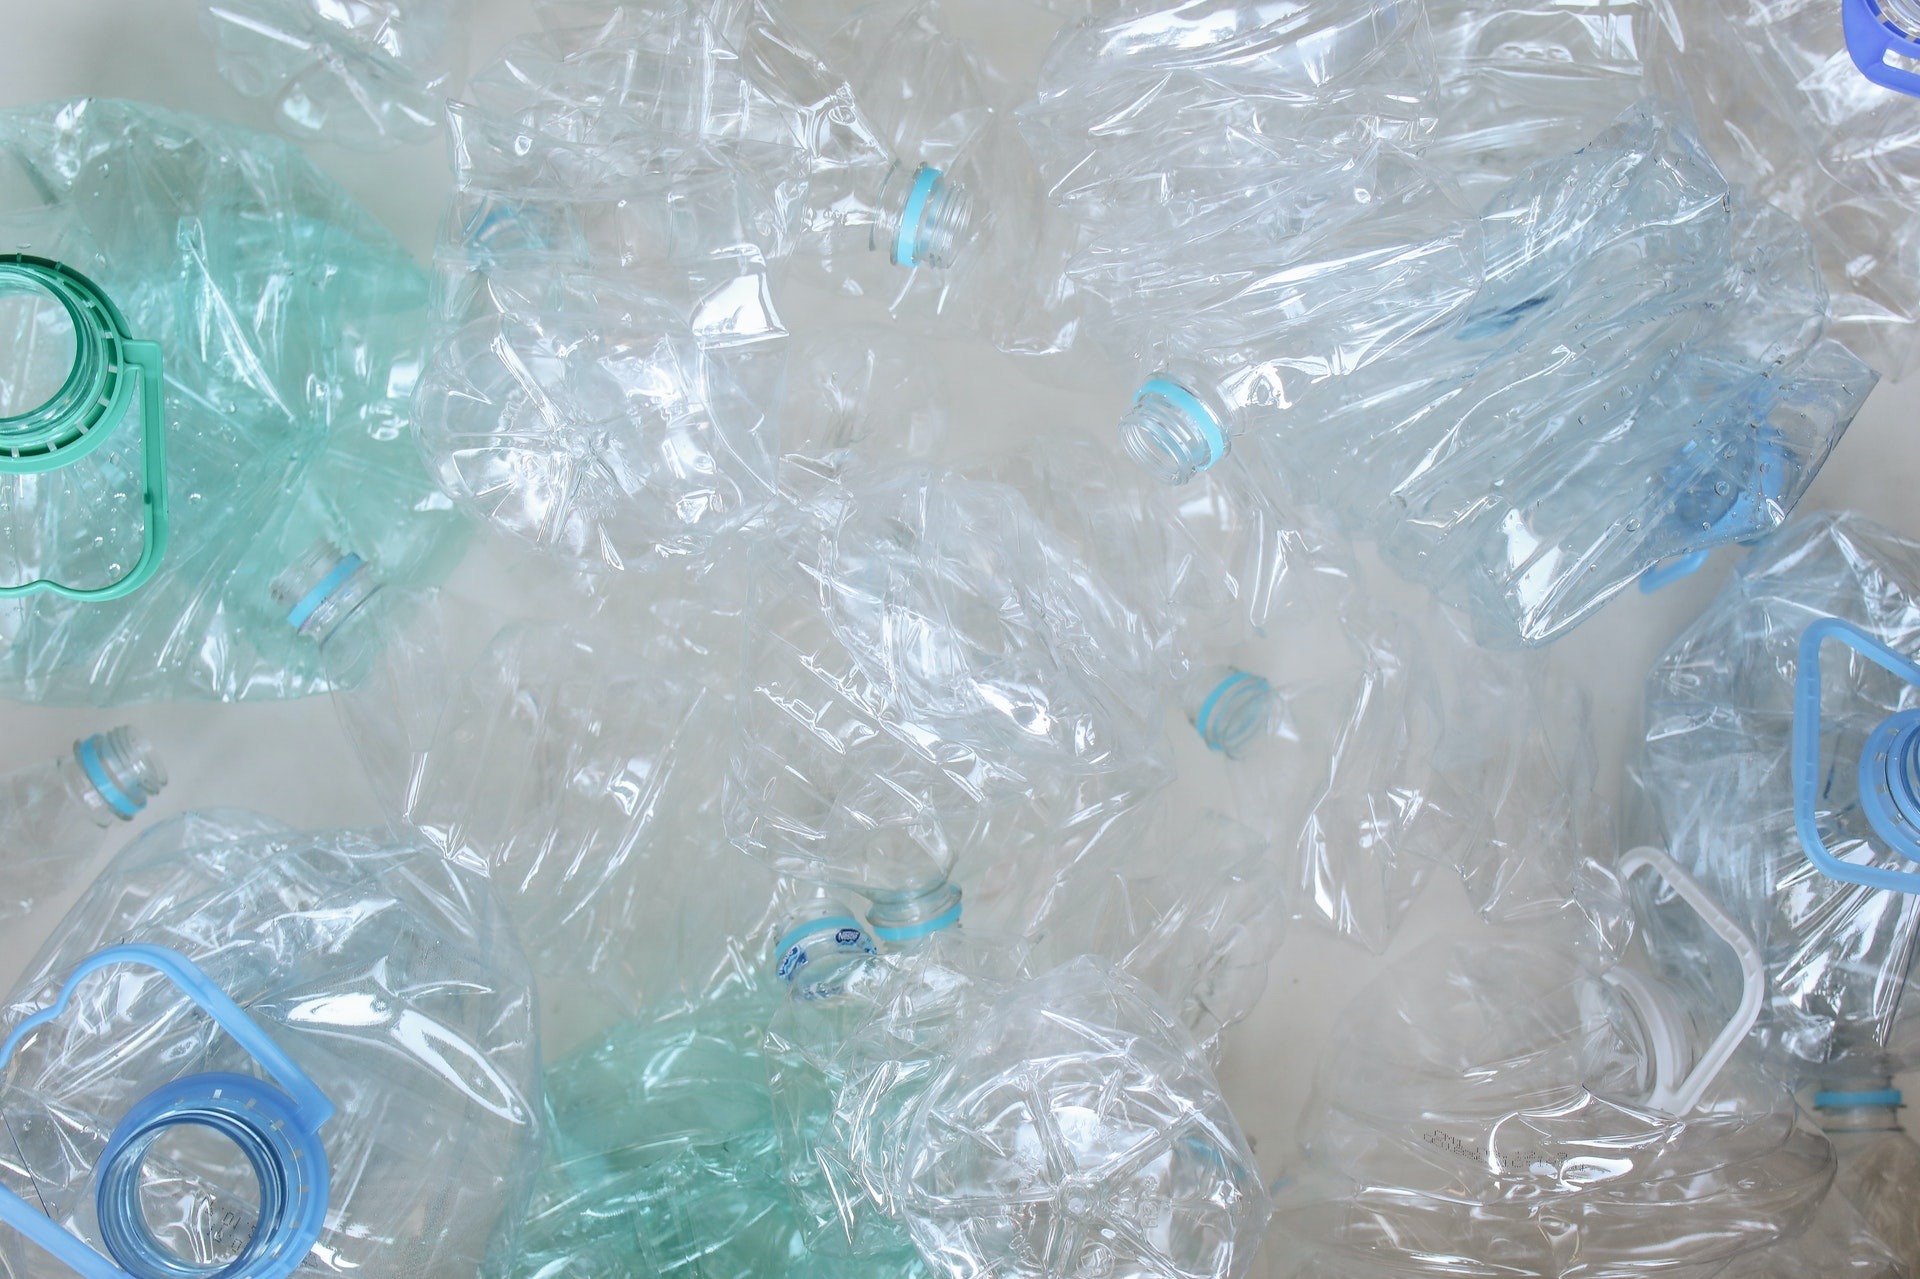 Ventajas del plástico reciclado en la agricultura